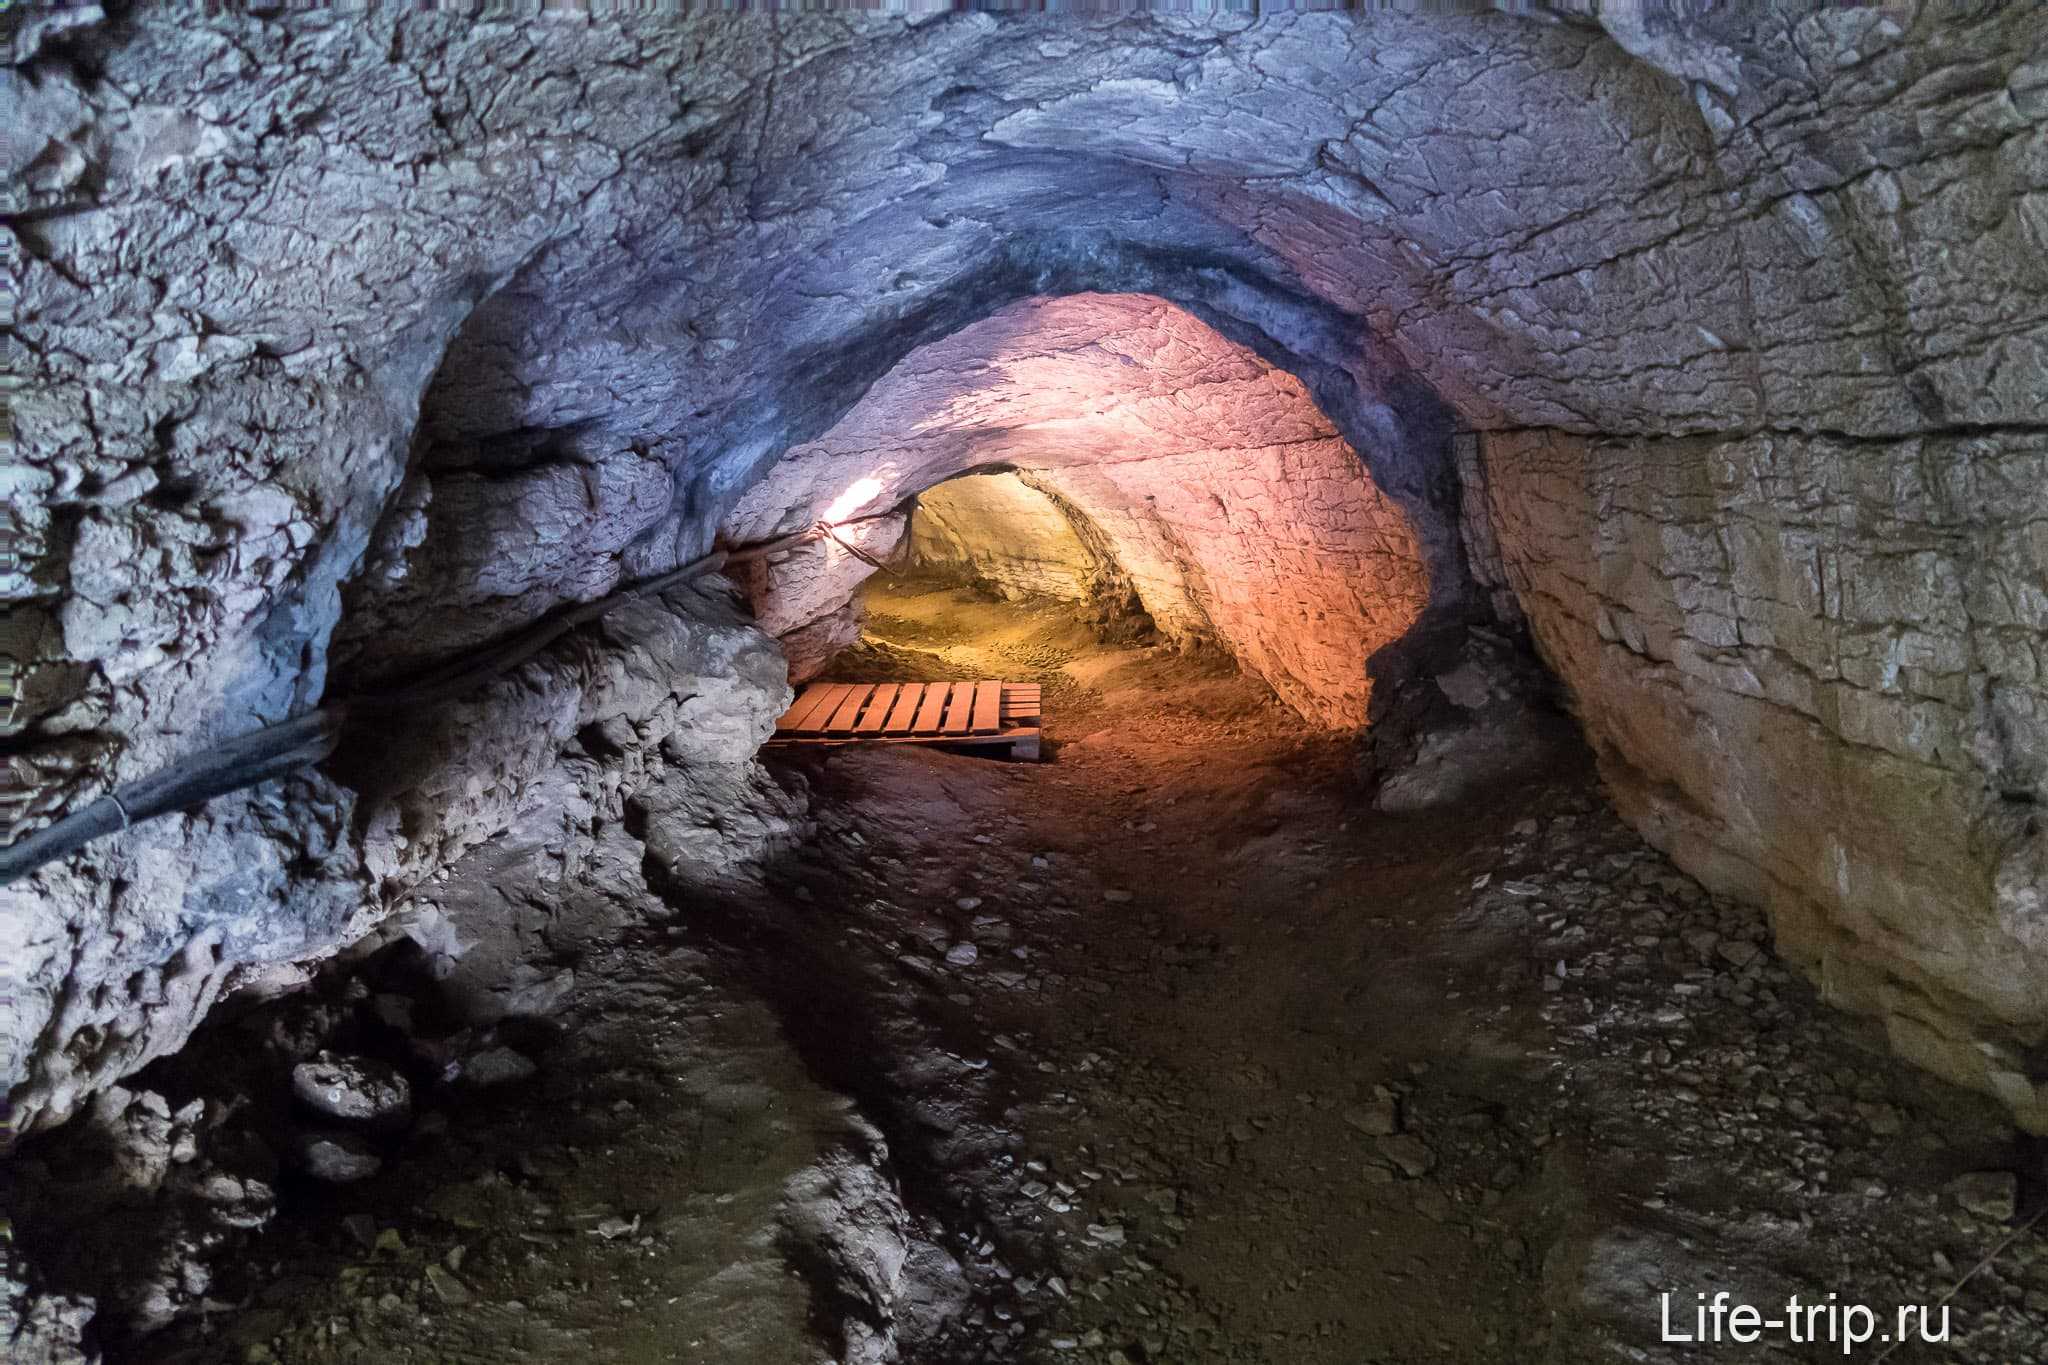 Ахштырская пещера в сочи | как добраться, история, фото